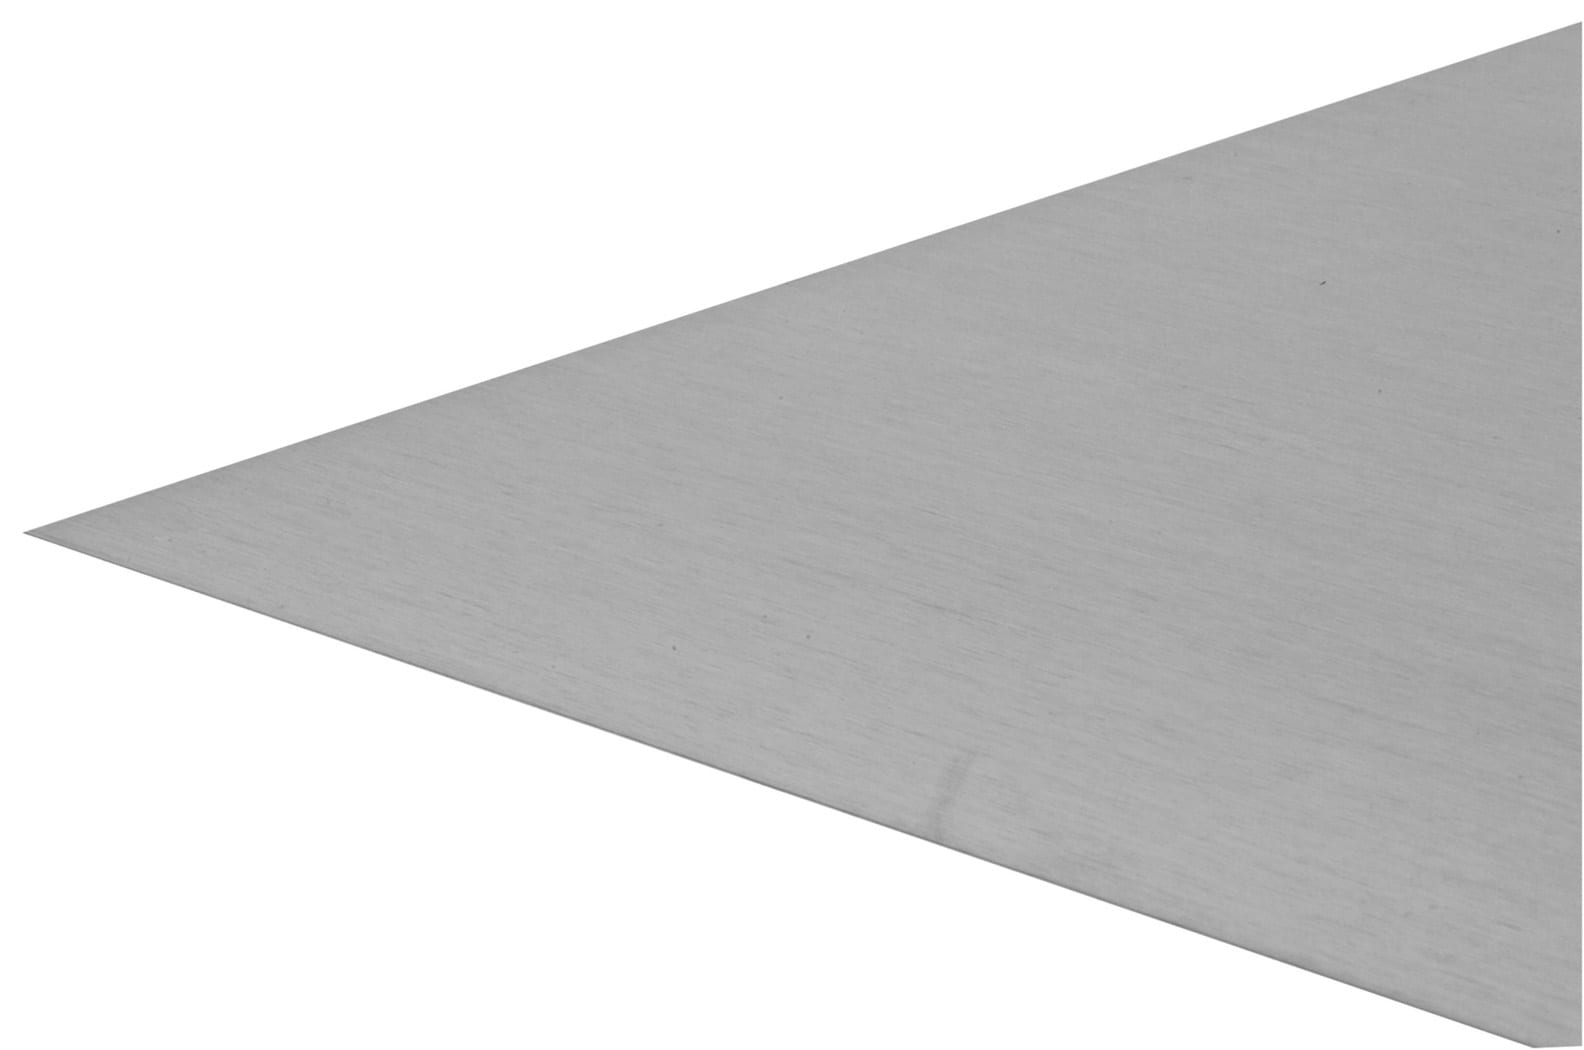 IMPERIAL 24-in x 36-in Steel Solid Sheet Metal in the Sheet Metal